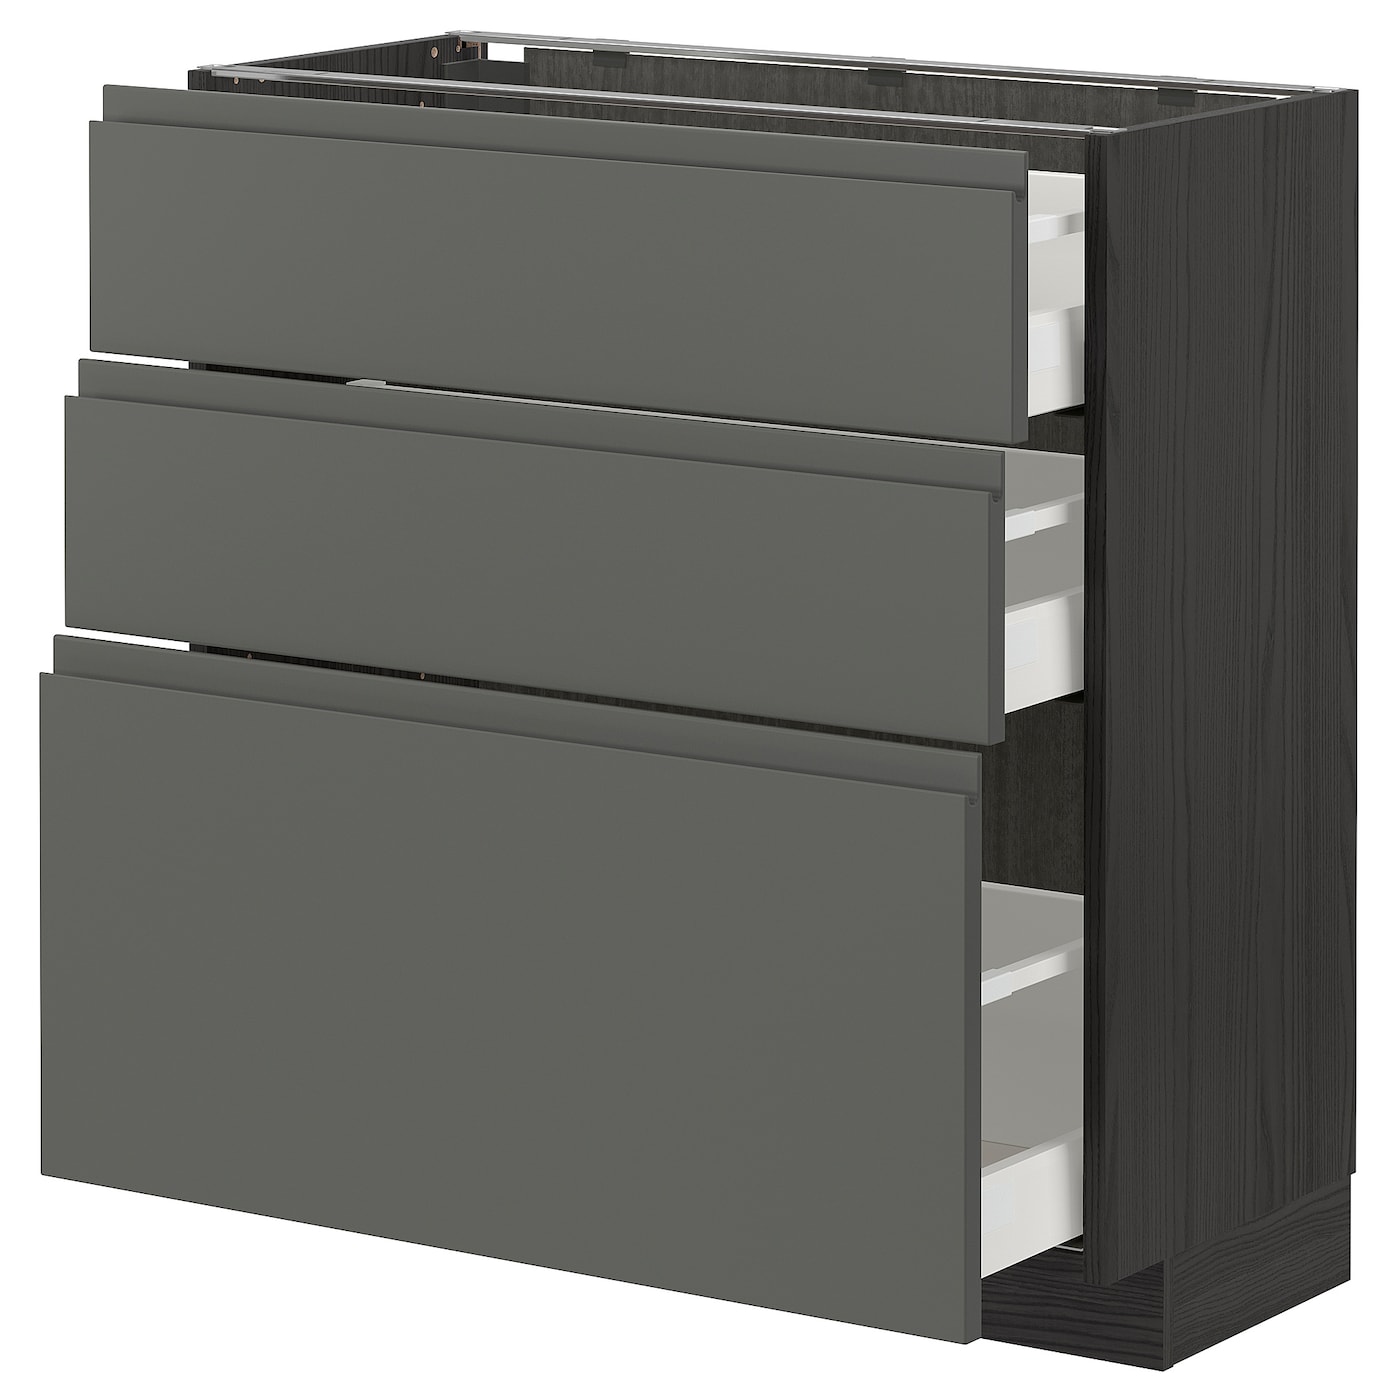 Напольный кухонный шкаф  - IKEA METOD MAXIMERA, 88x39x80см, серый/темно-серый, МЕТОД МАКСИМЕРА ИКЕА